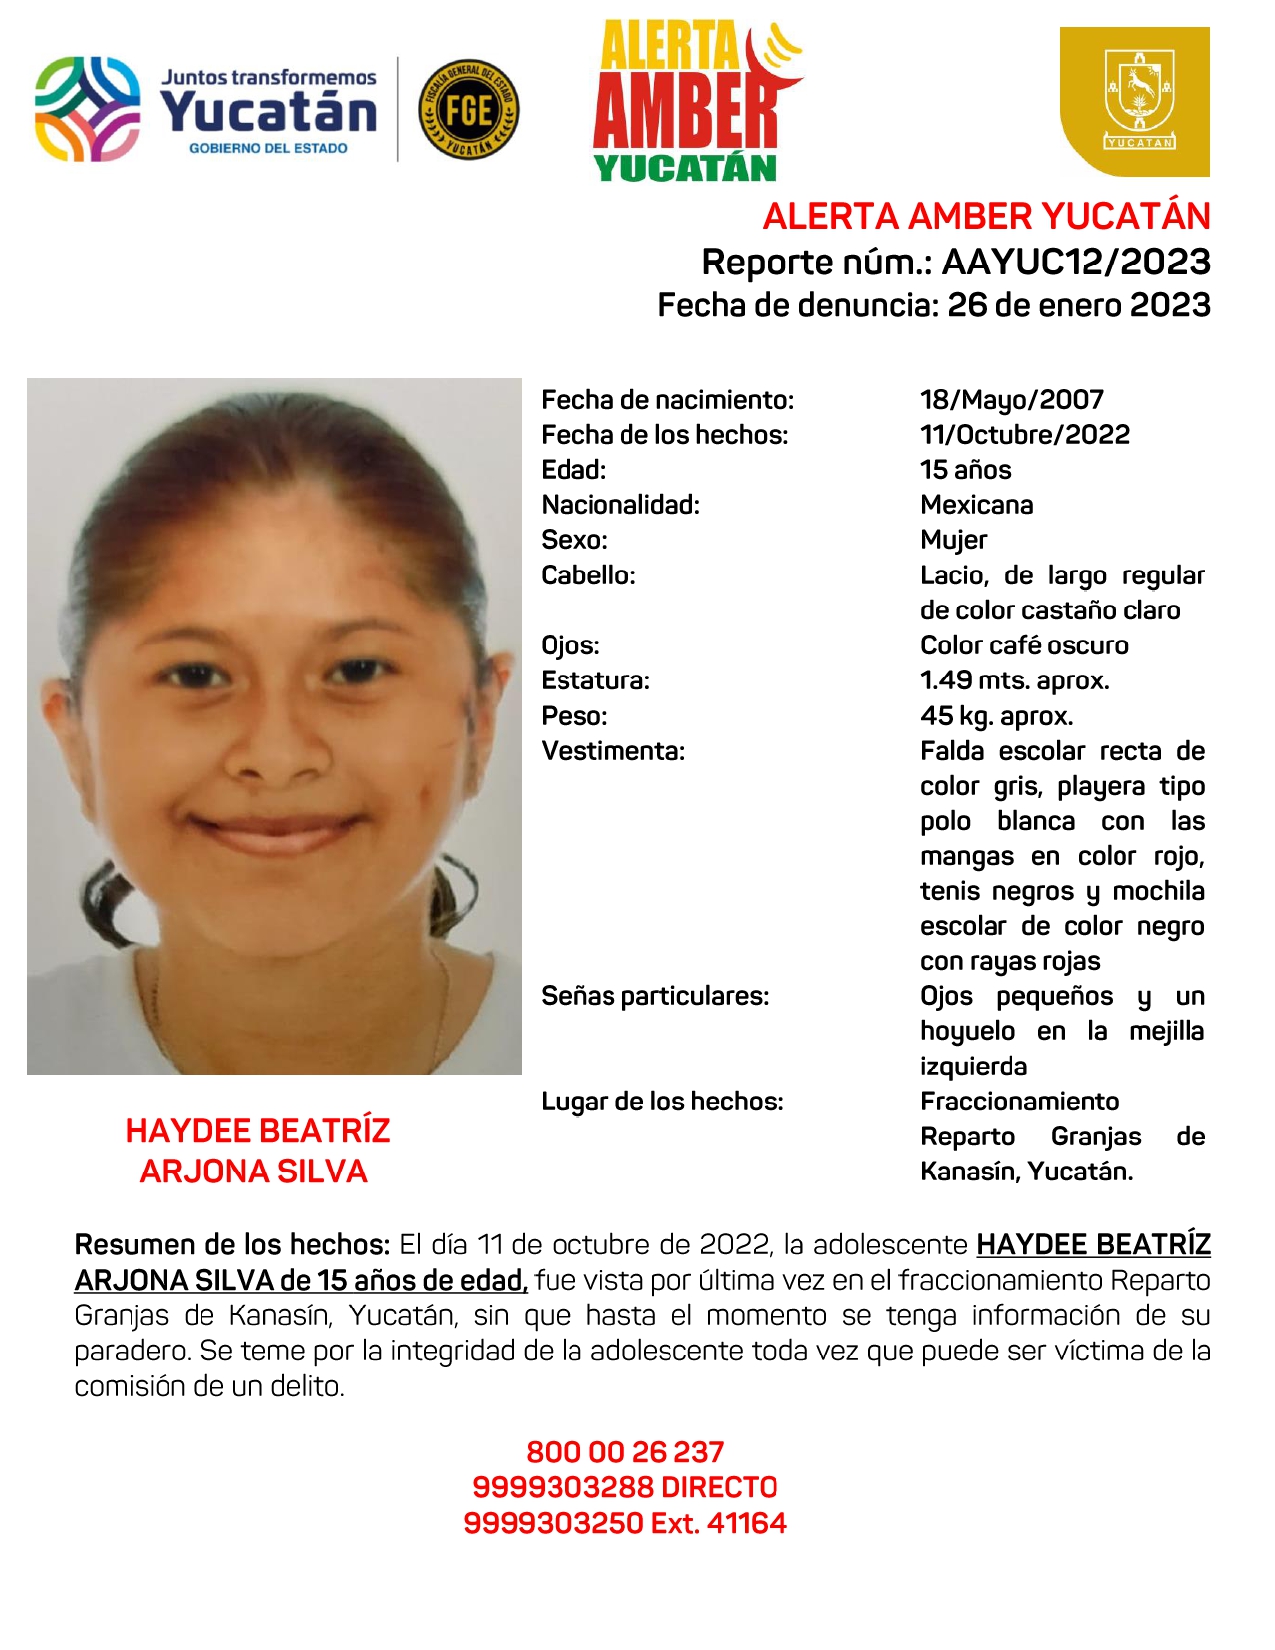 ALERTA AMBER HAYDEE BEATRÍZ ARJONA SILVA DE 15 AÑOS (YUC)